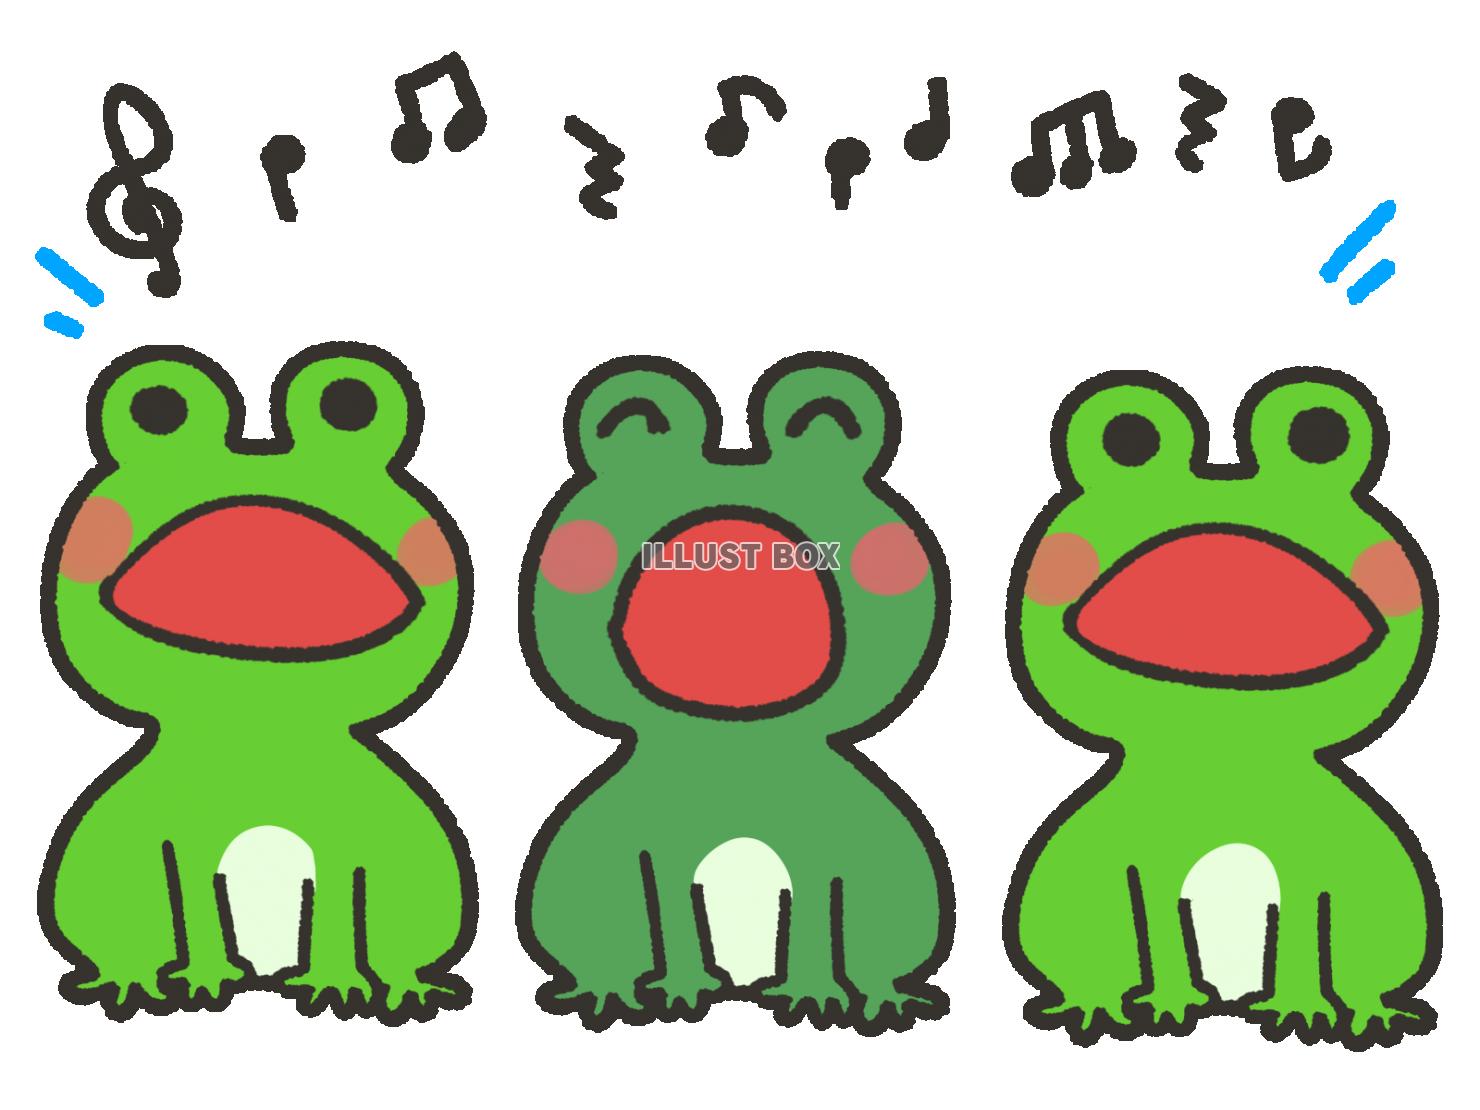 三匹のカエルと音楽